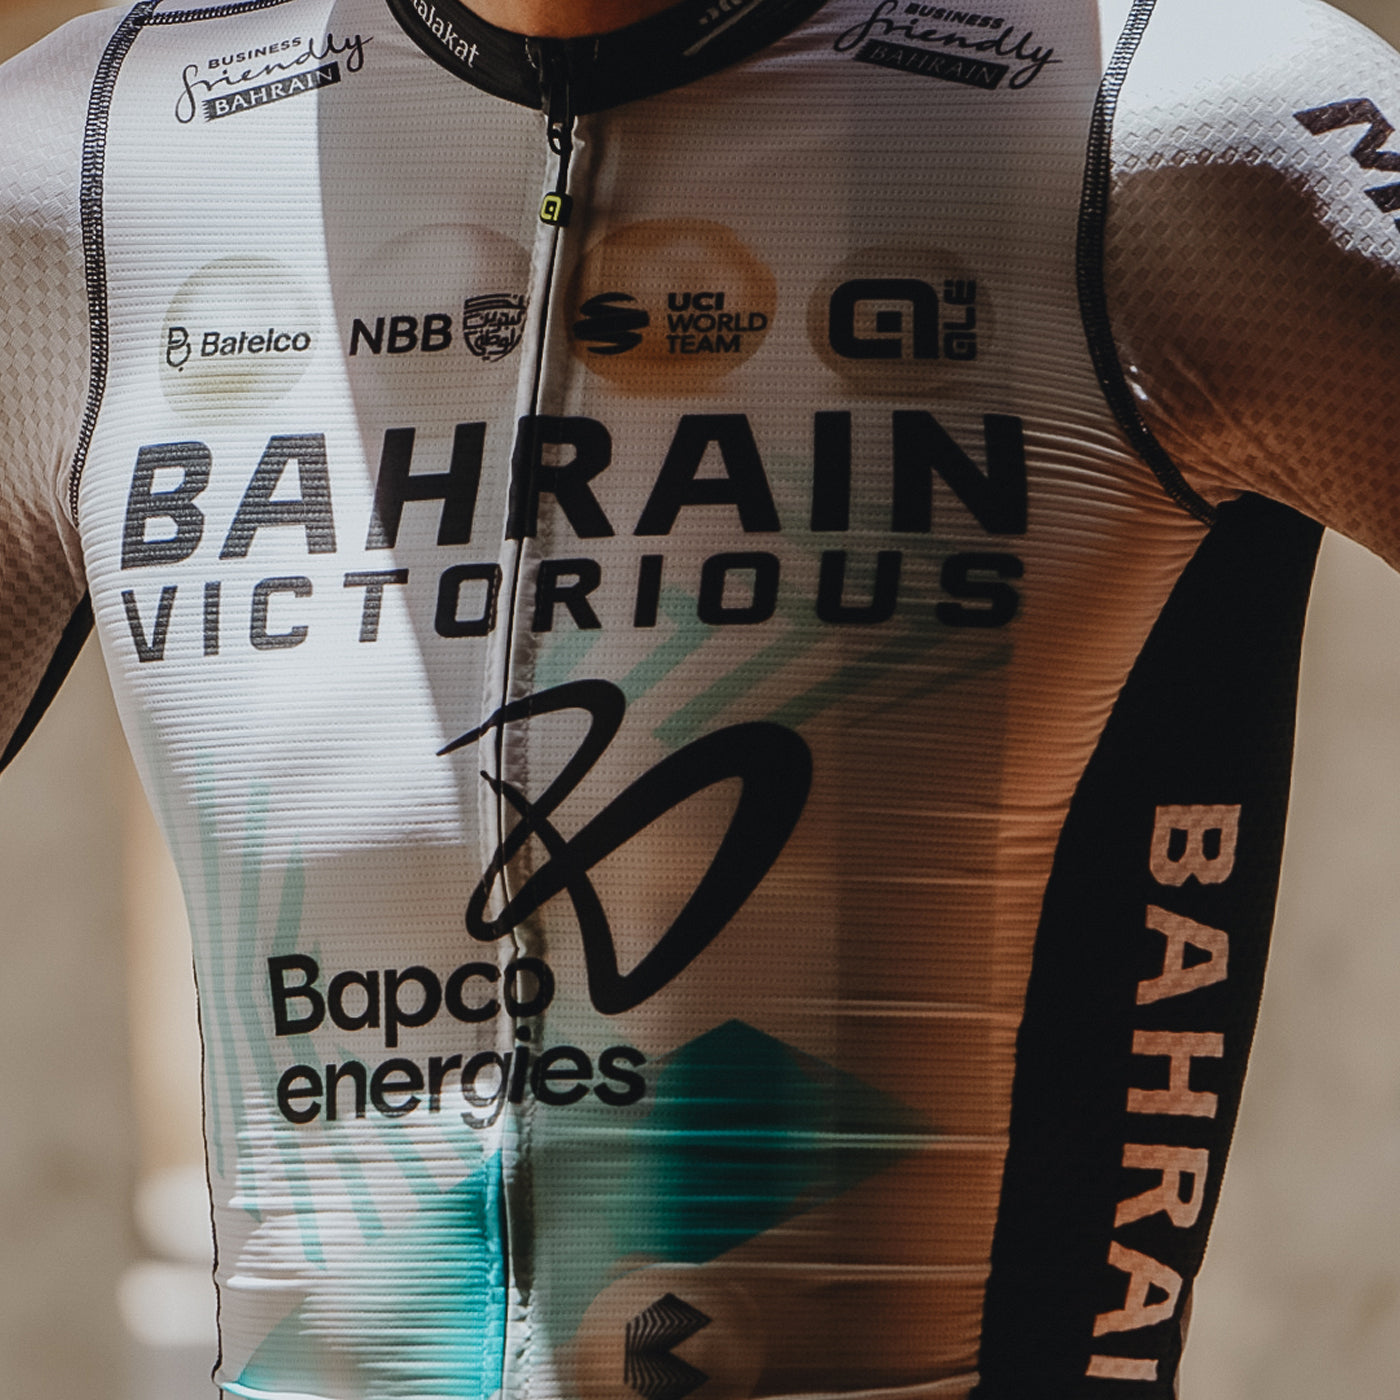 Maillot Bahrain Victorious 2023 PRS - Tour de France